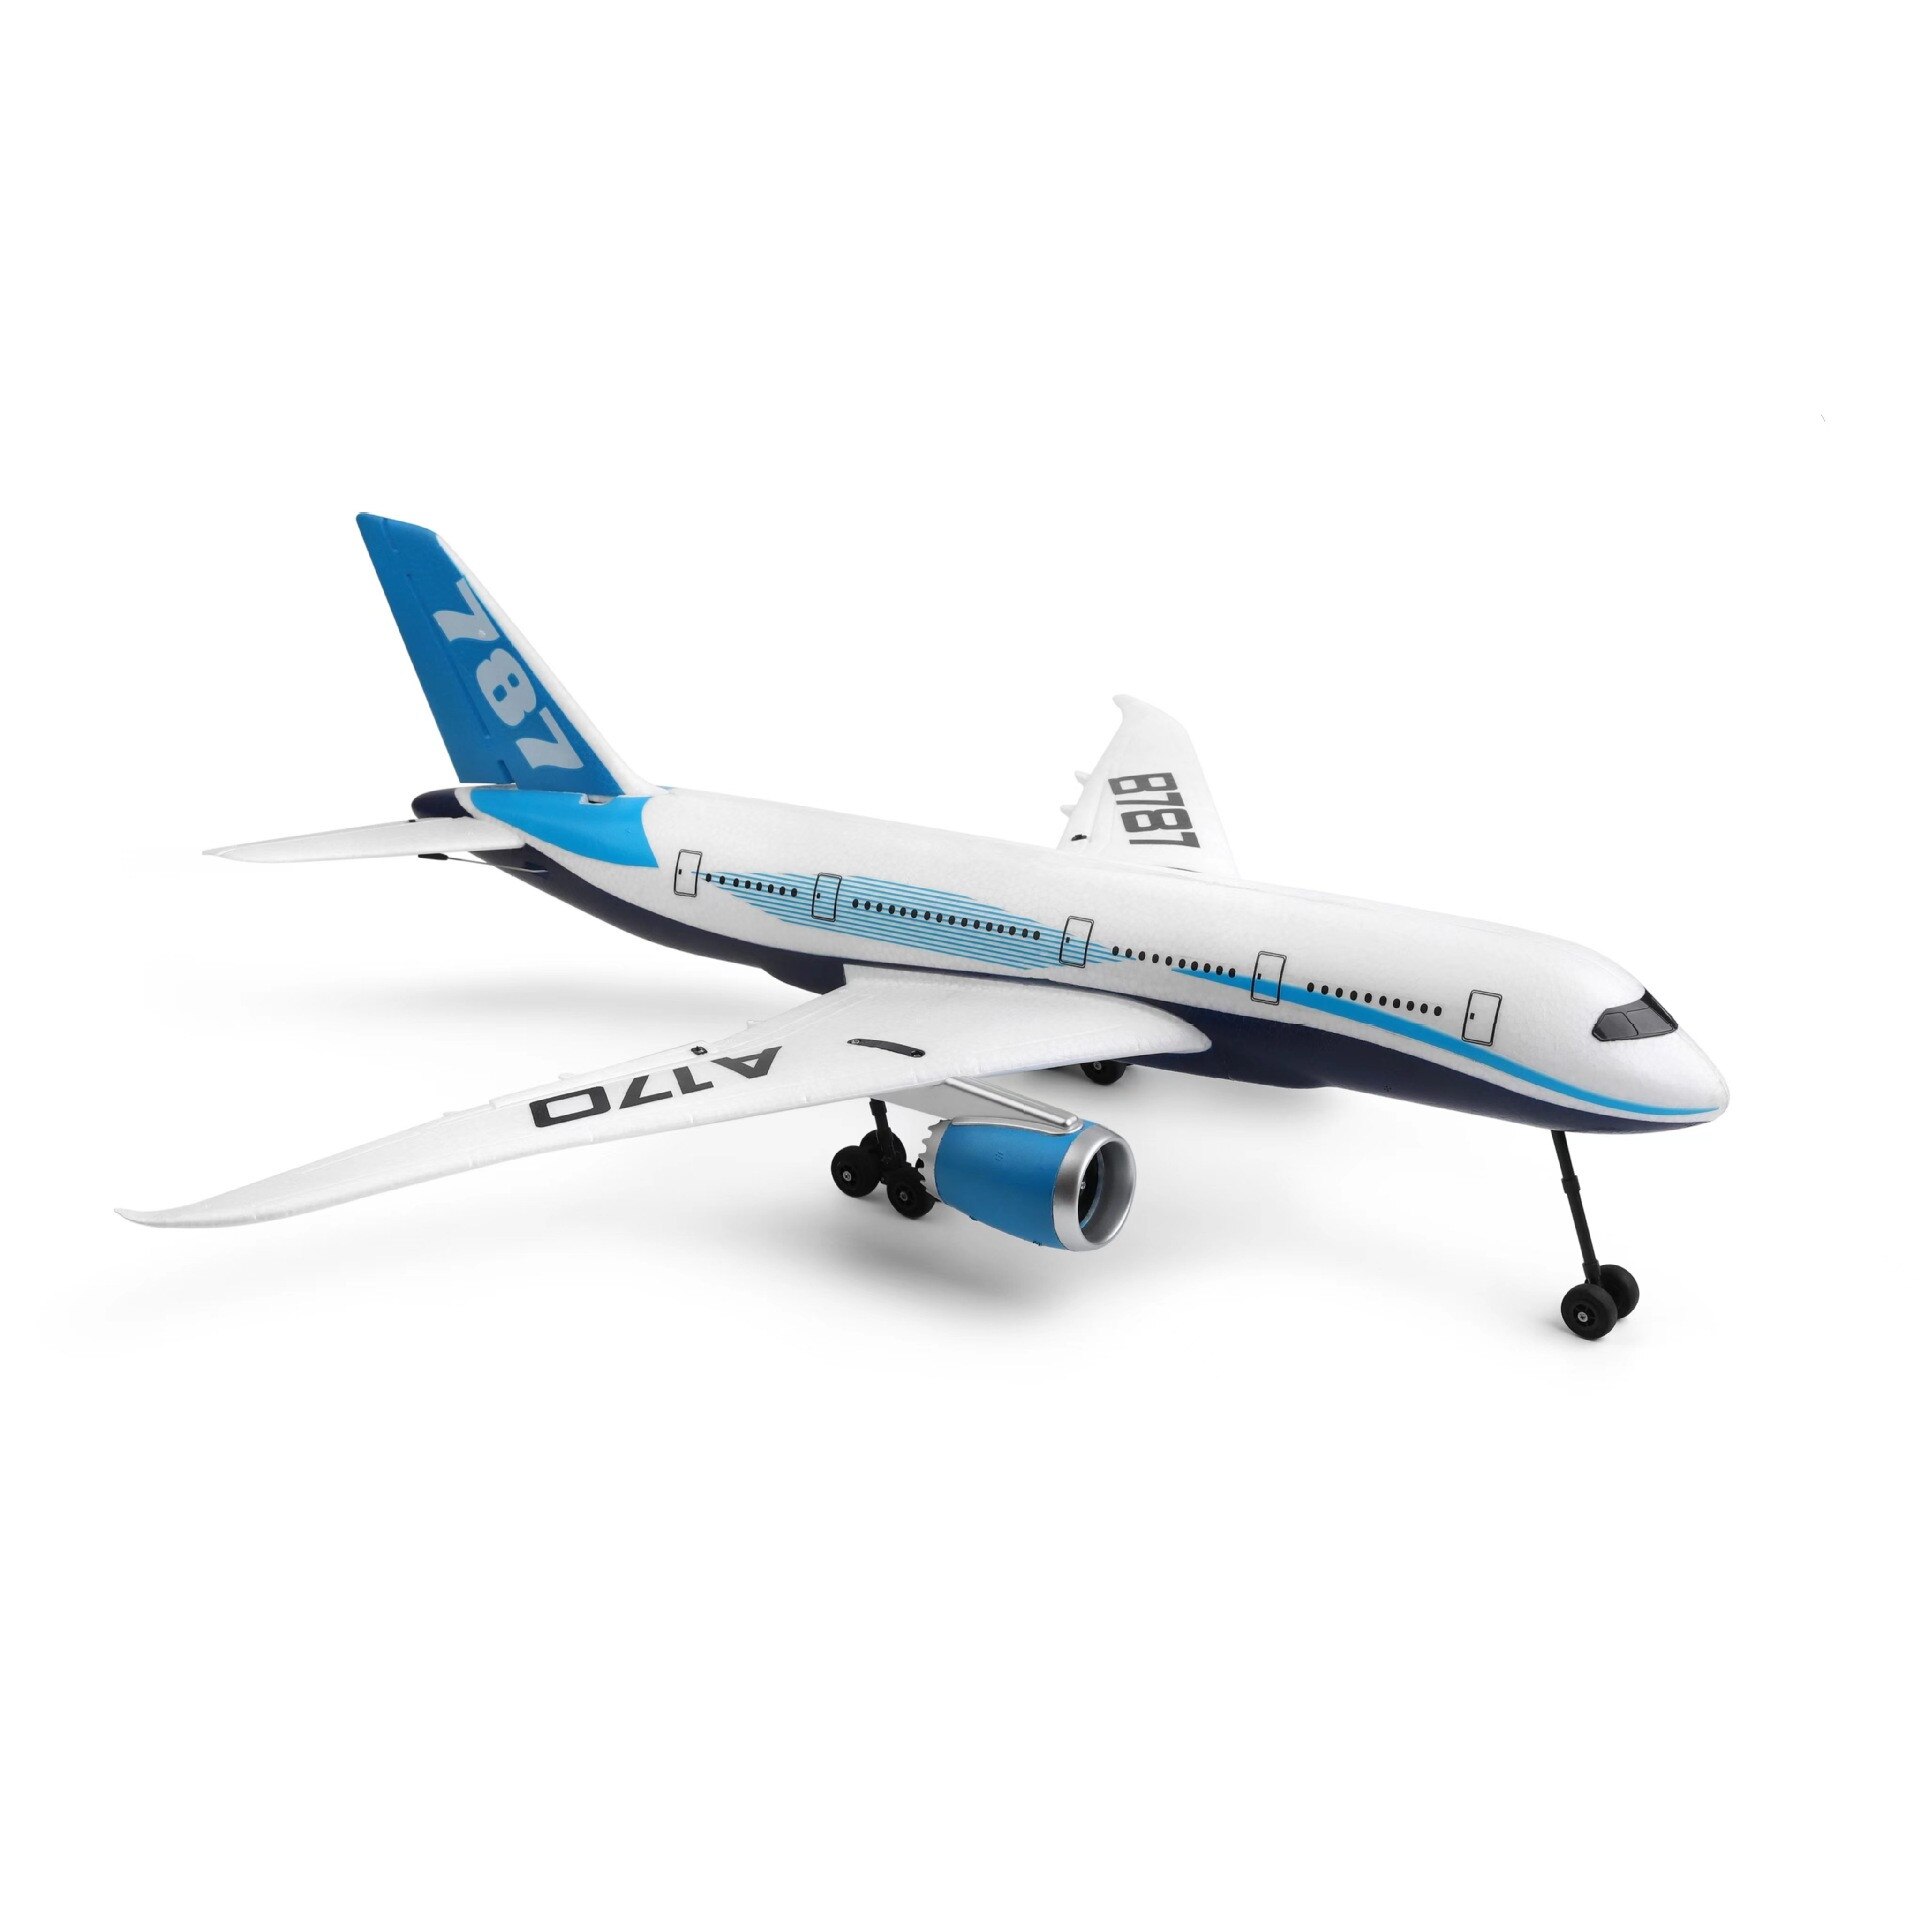 DIY EPP 원격 제어 항공기 RC 드론 보잉 787 고정익 비행기 자이로 비행기 키트, 어린이 야외 장난감